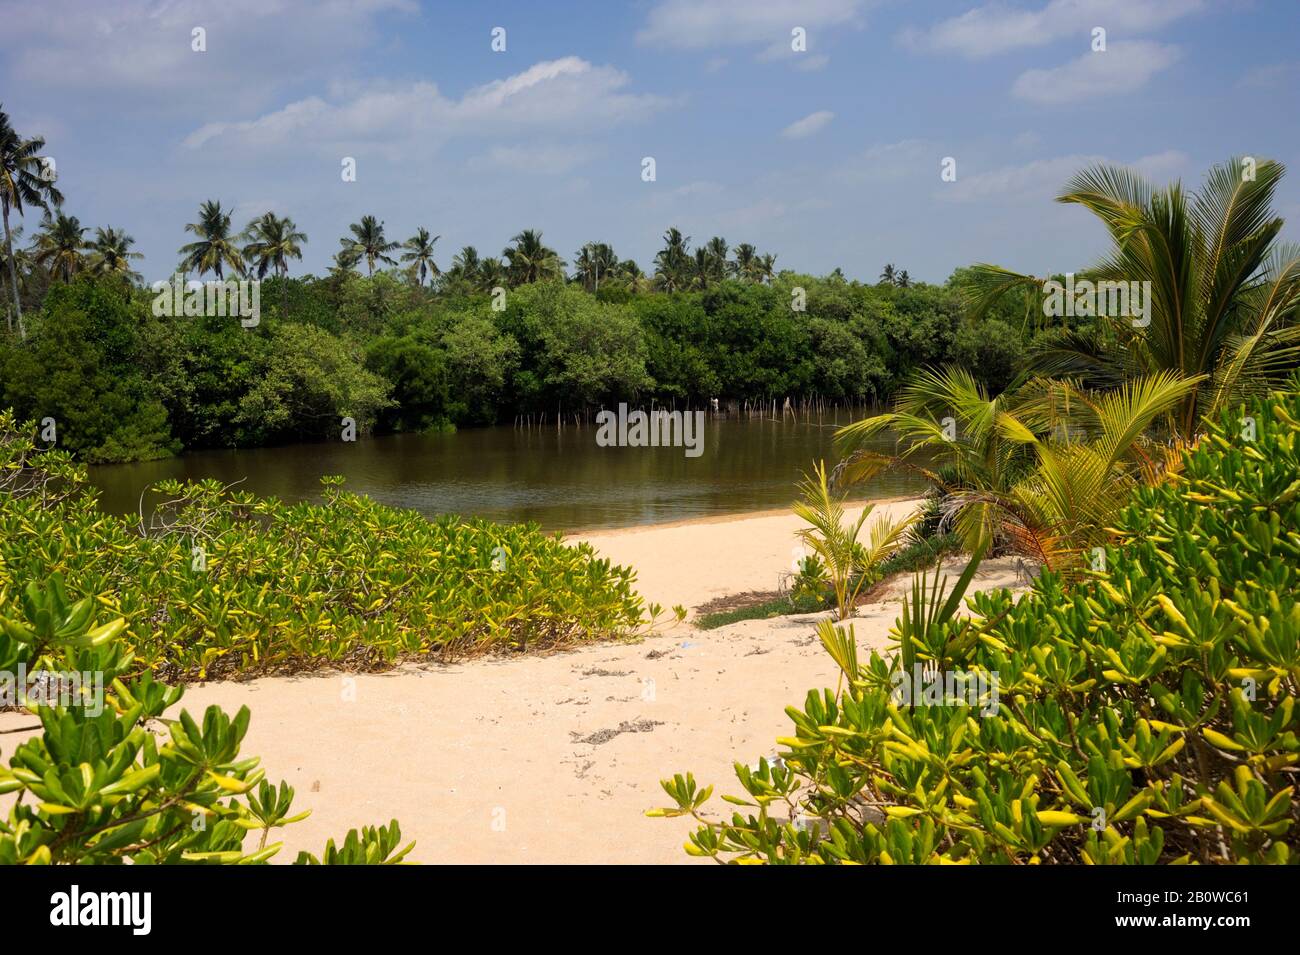 Sri Lanka, Tangalle, lagoon Stock Photo